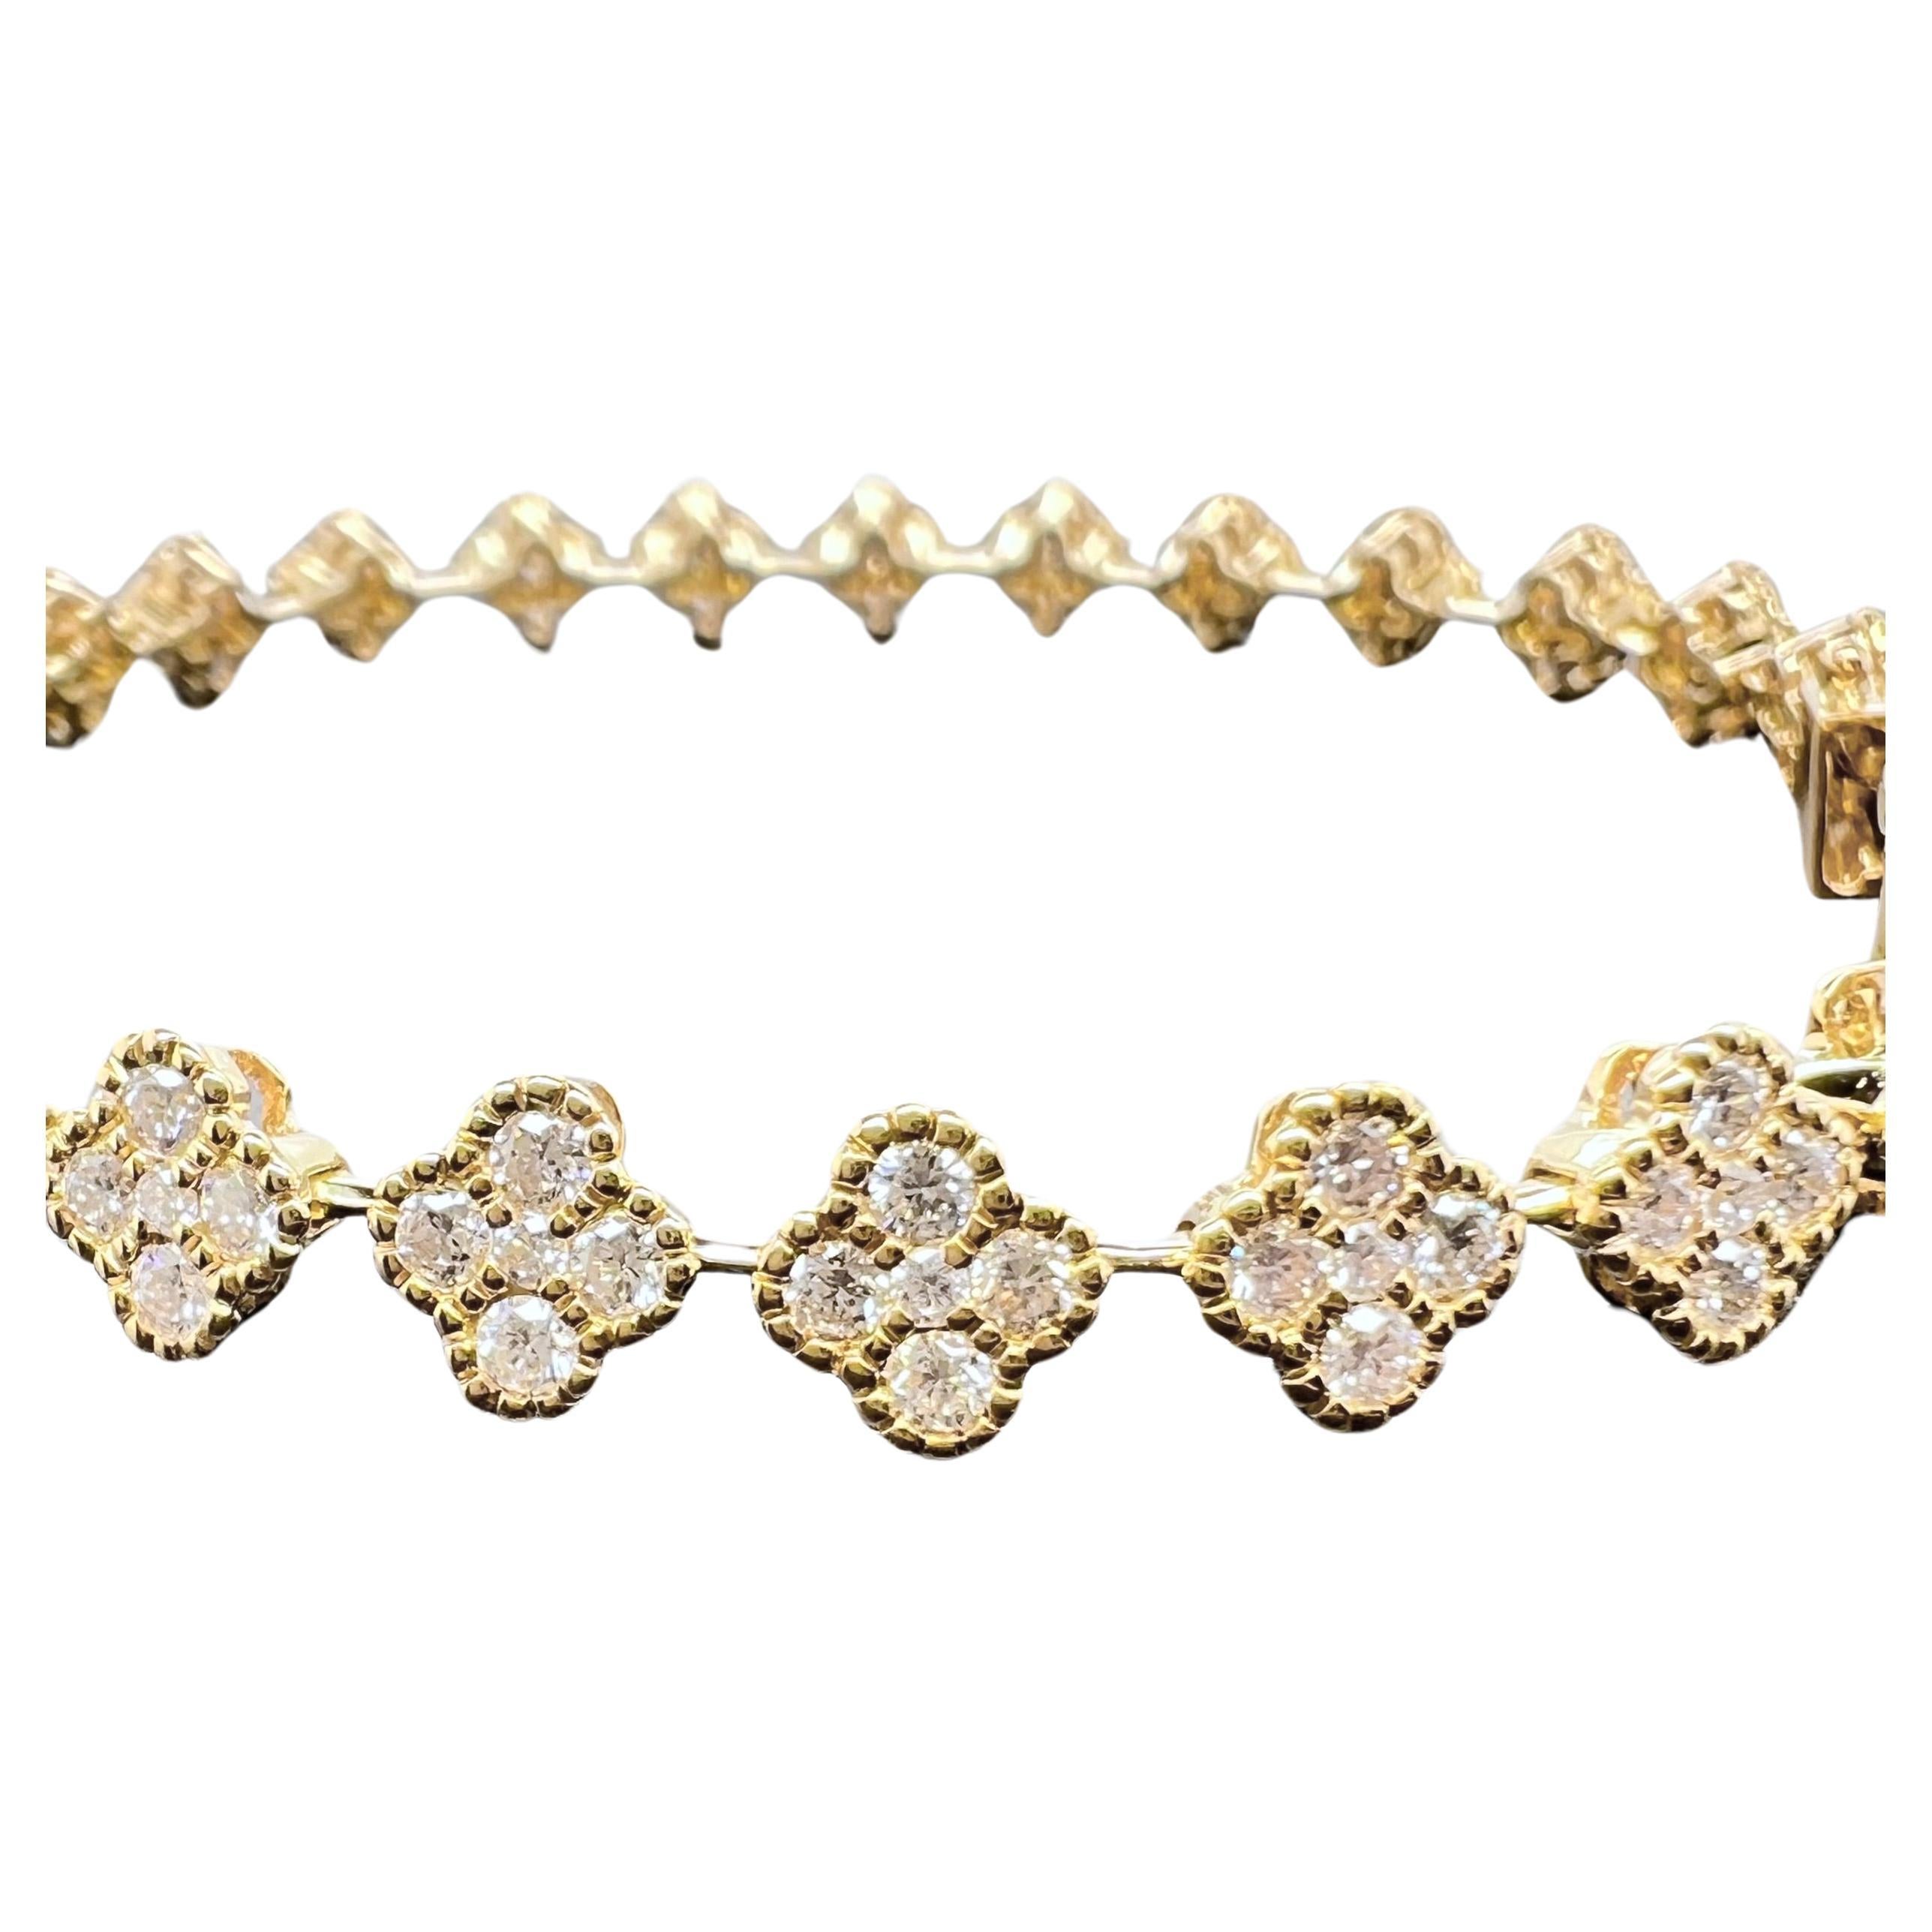 C'est absolument l'un de nos bracelets empilables préférés.  Serti dans de l'or jaune 18 carats, ce bracelet de tennis en forme de trèfle est idéal pour compléter une collection ou pour être porté seul.  Les diamants ronds et brillants forment un